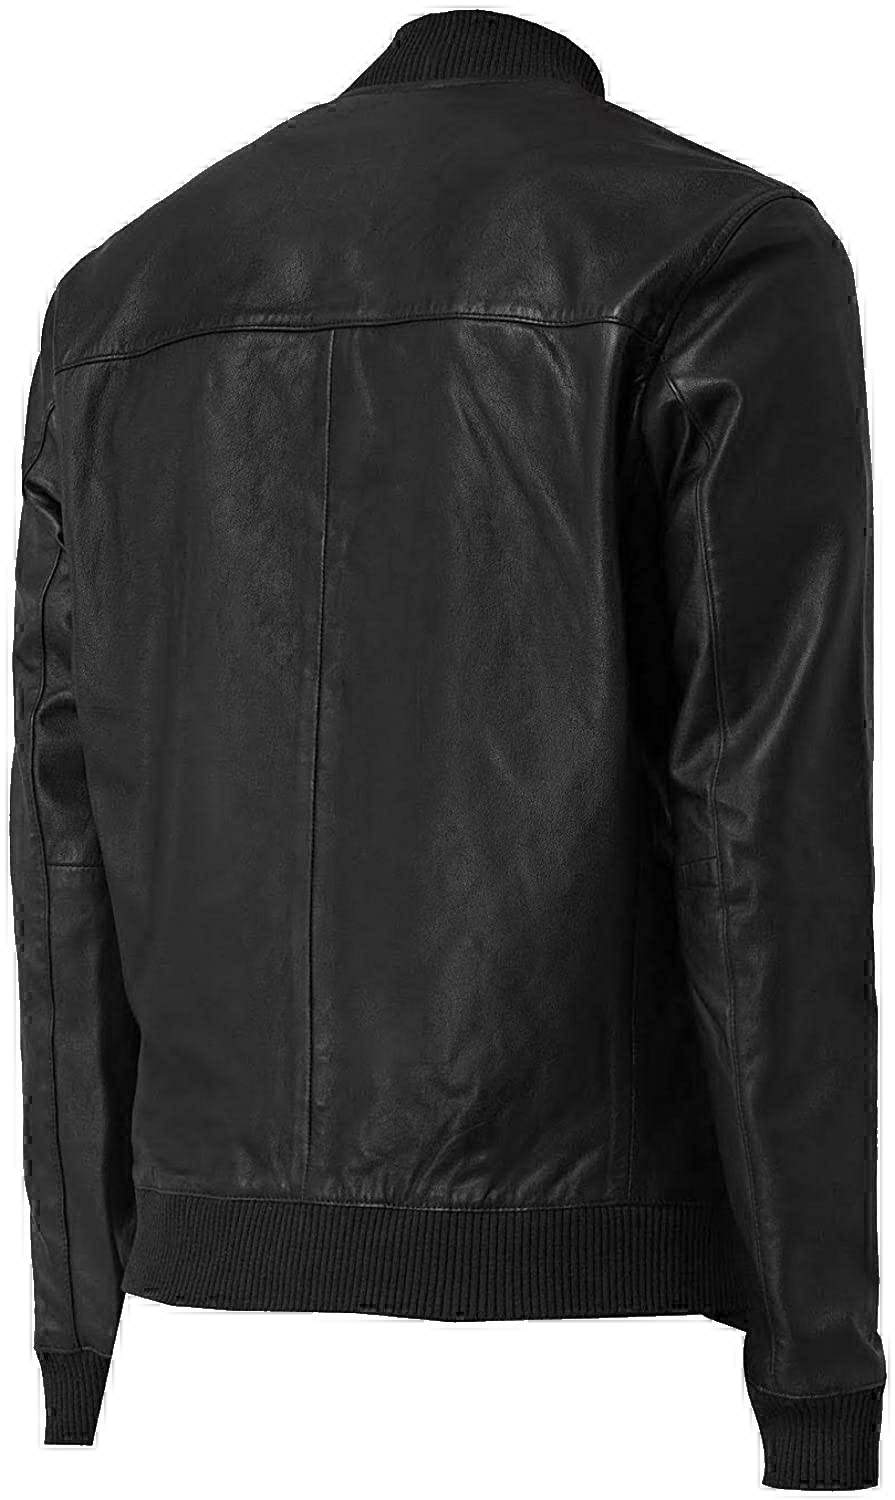 varsity jacket leather jacket